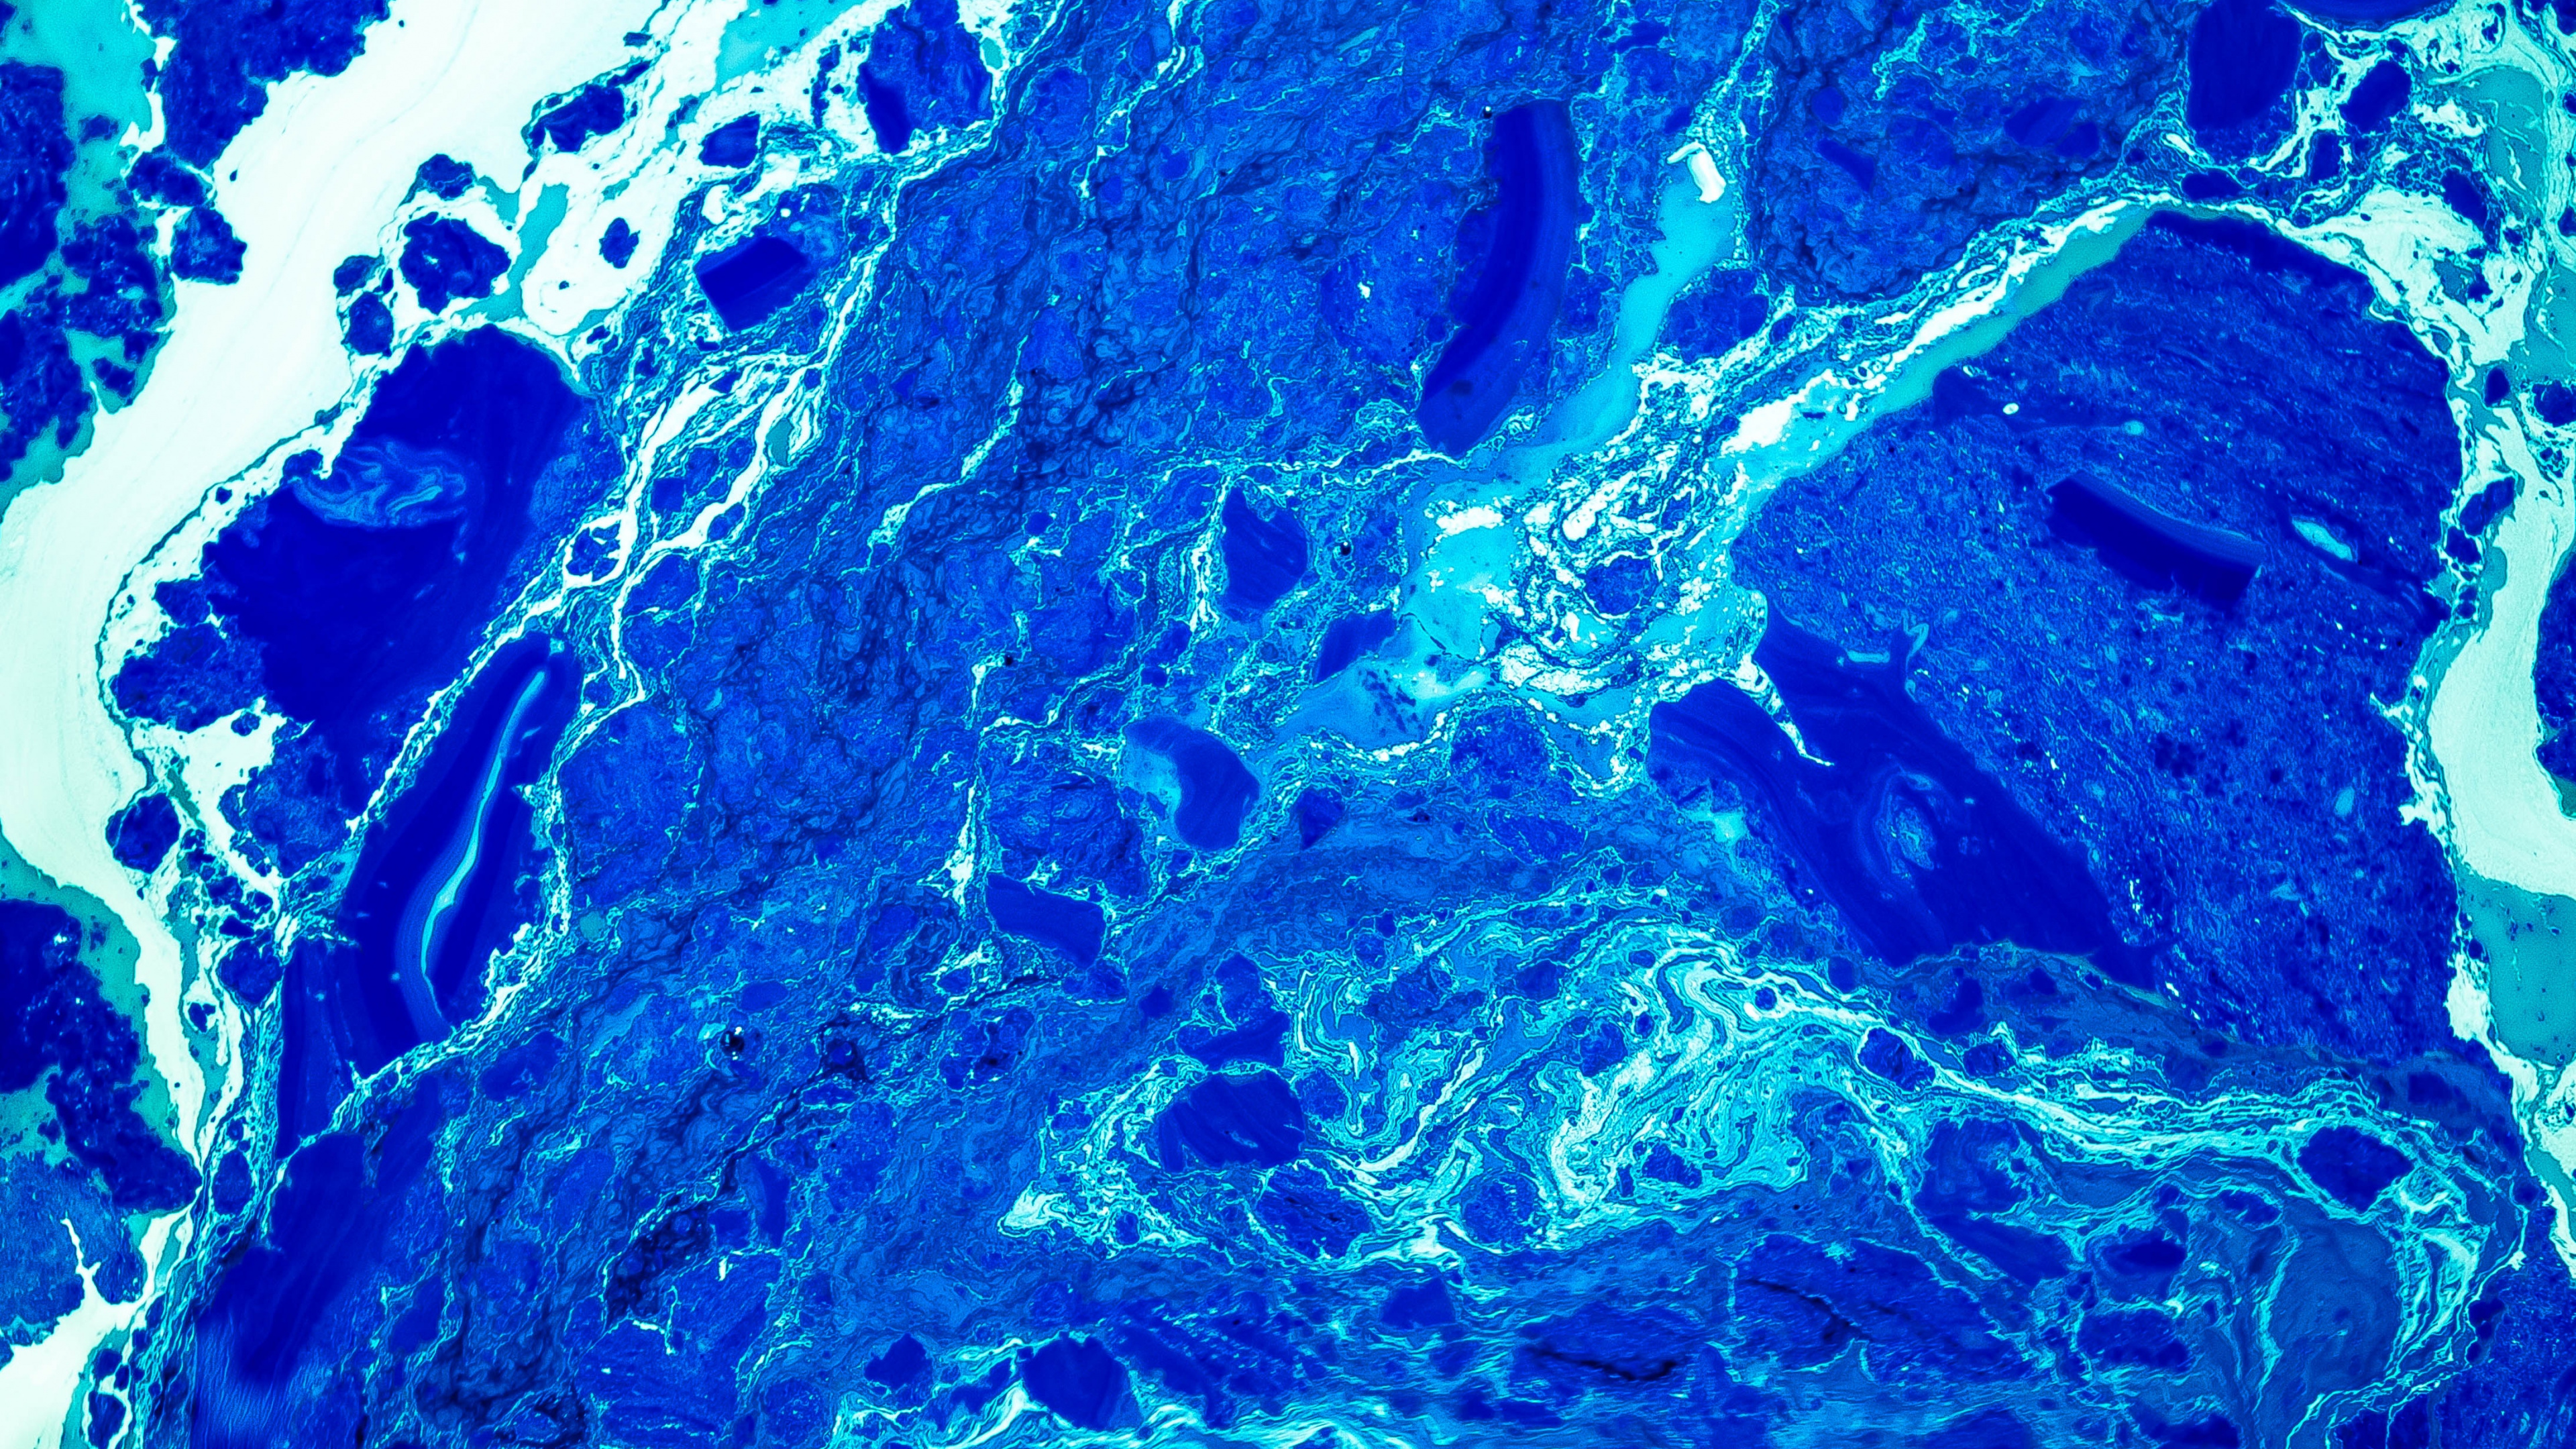 Pintura Abstracta Azul y Marrón. Wallpaper in 3840x2160 Resolution